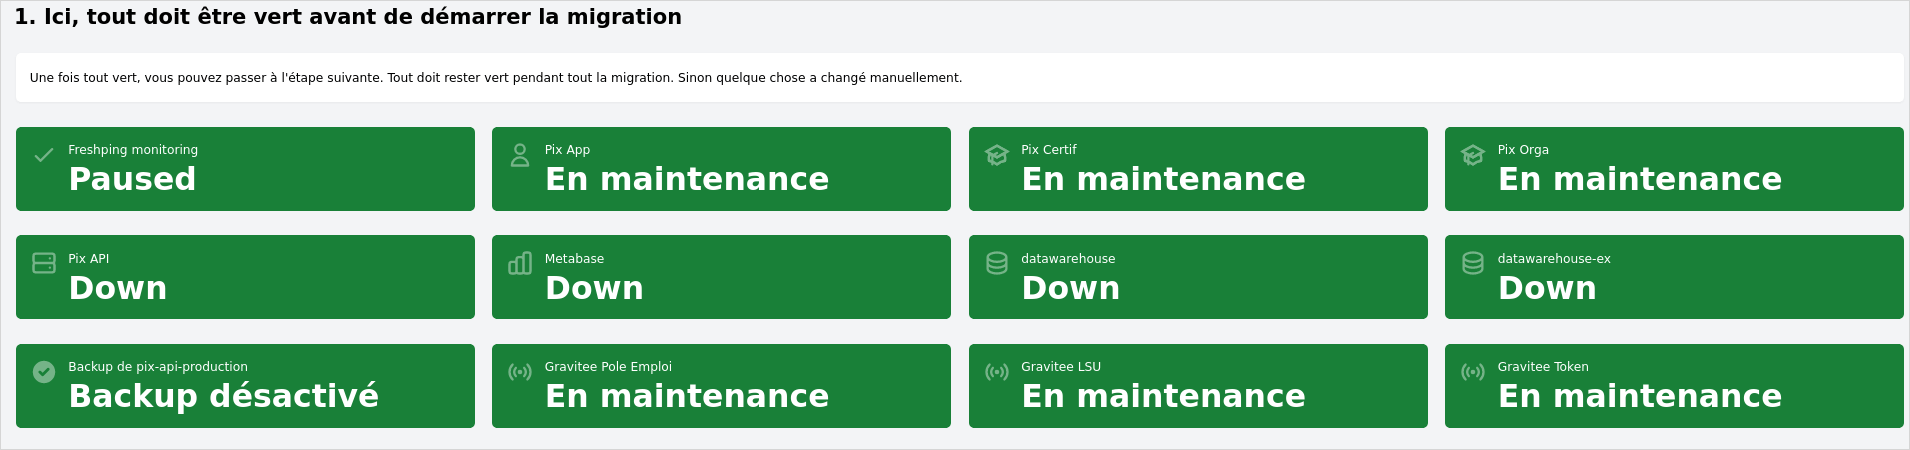 maintenance dashboard green